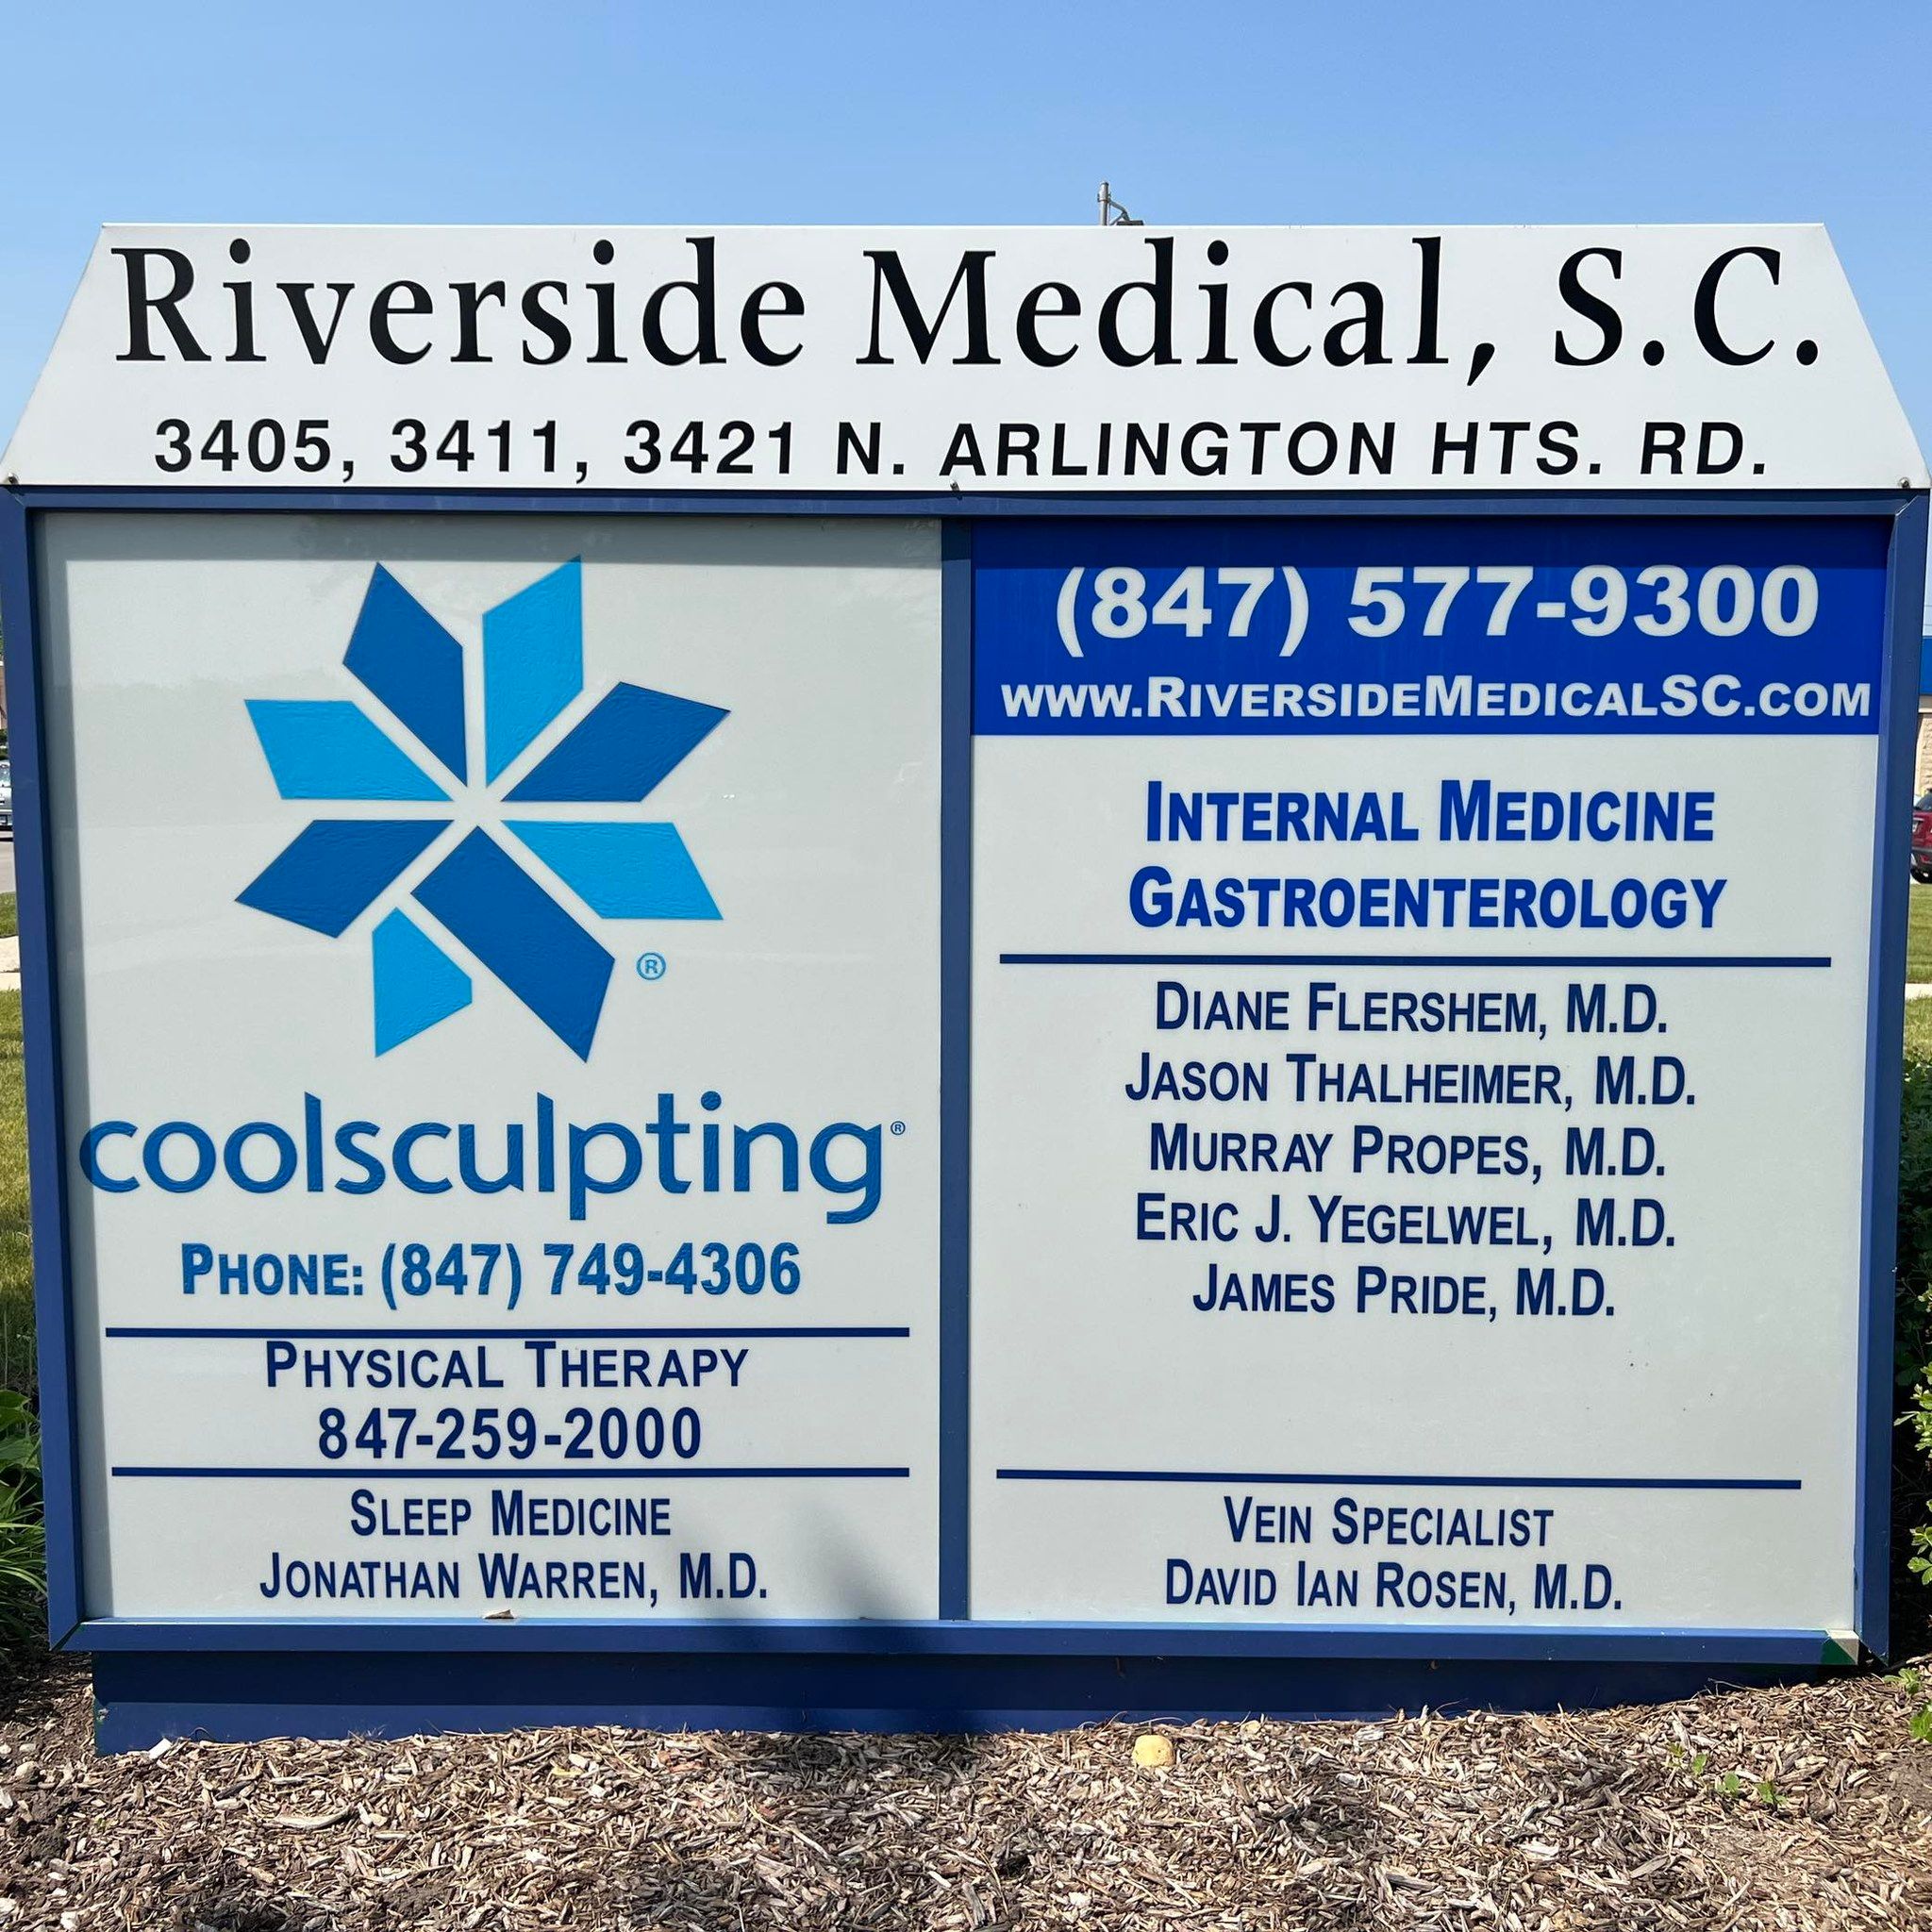 Riverside Medical S.C